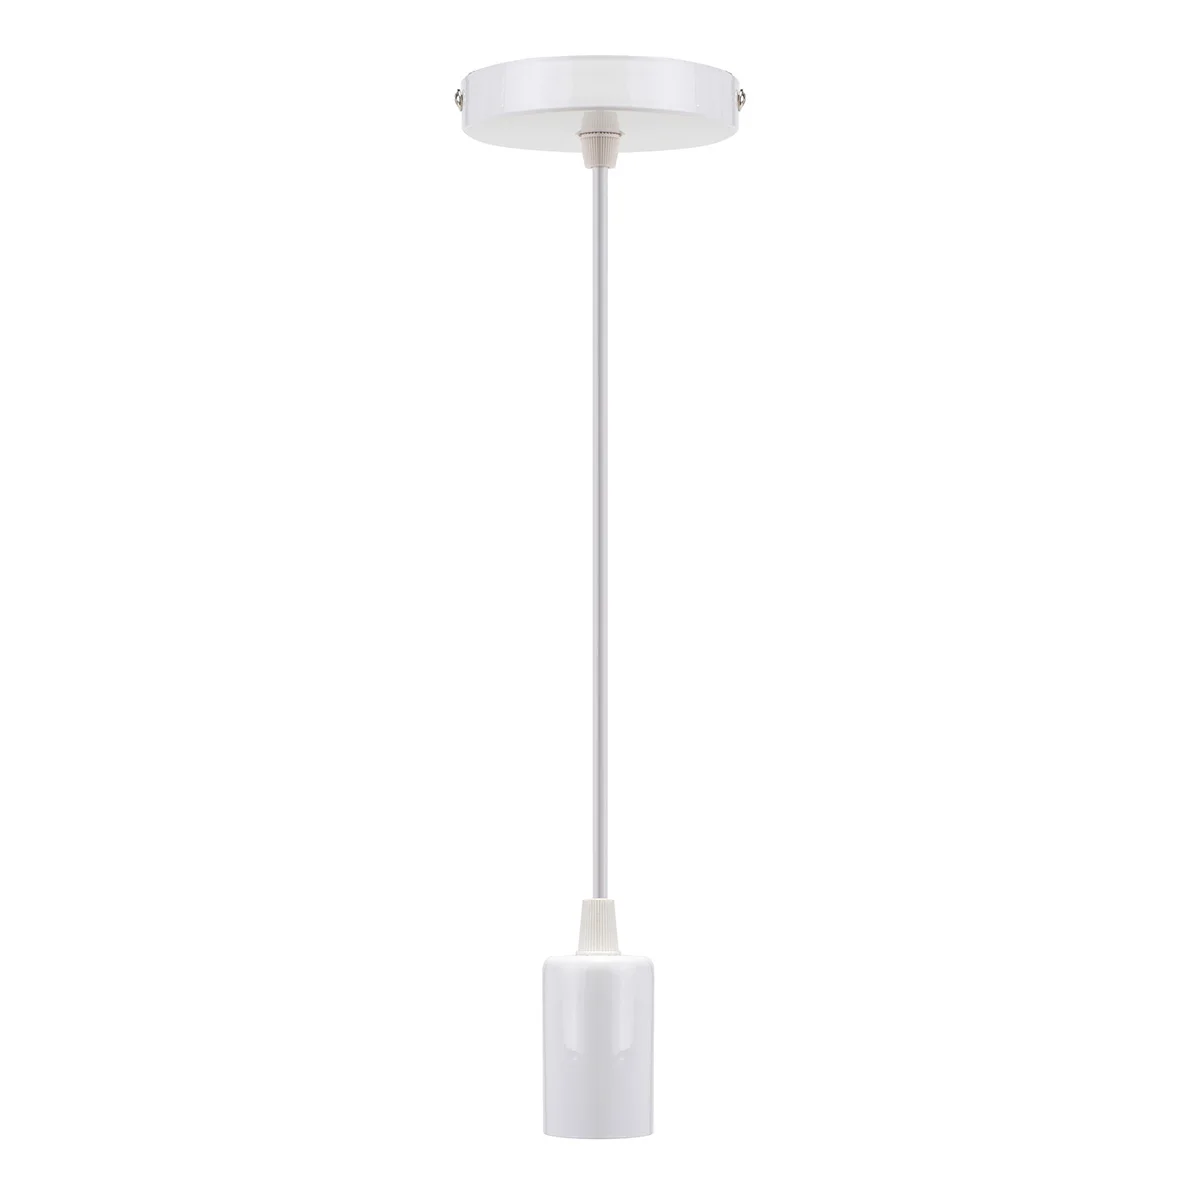 E27 1 м 220 в винт Потолочный подвесной светильник держатель цоколь подвесной светильник декор черный/белый/серебристый для гостиничной гостиной - Цвет: Белый